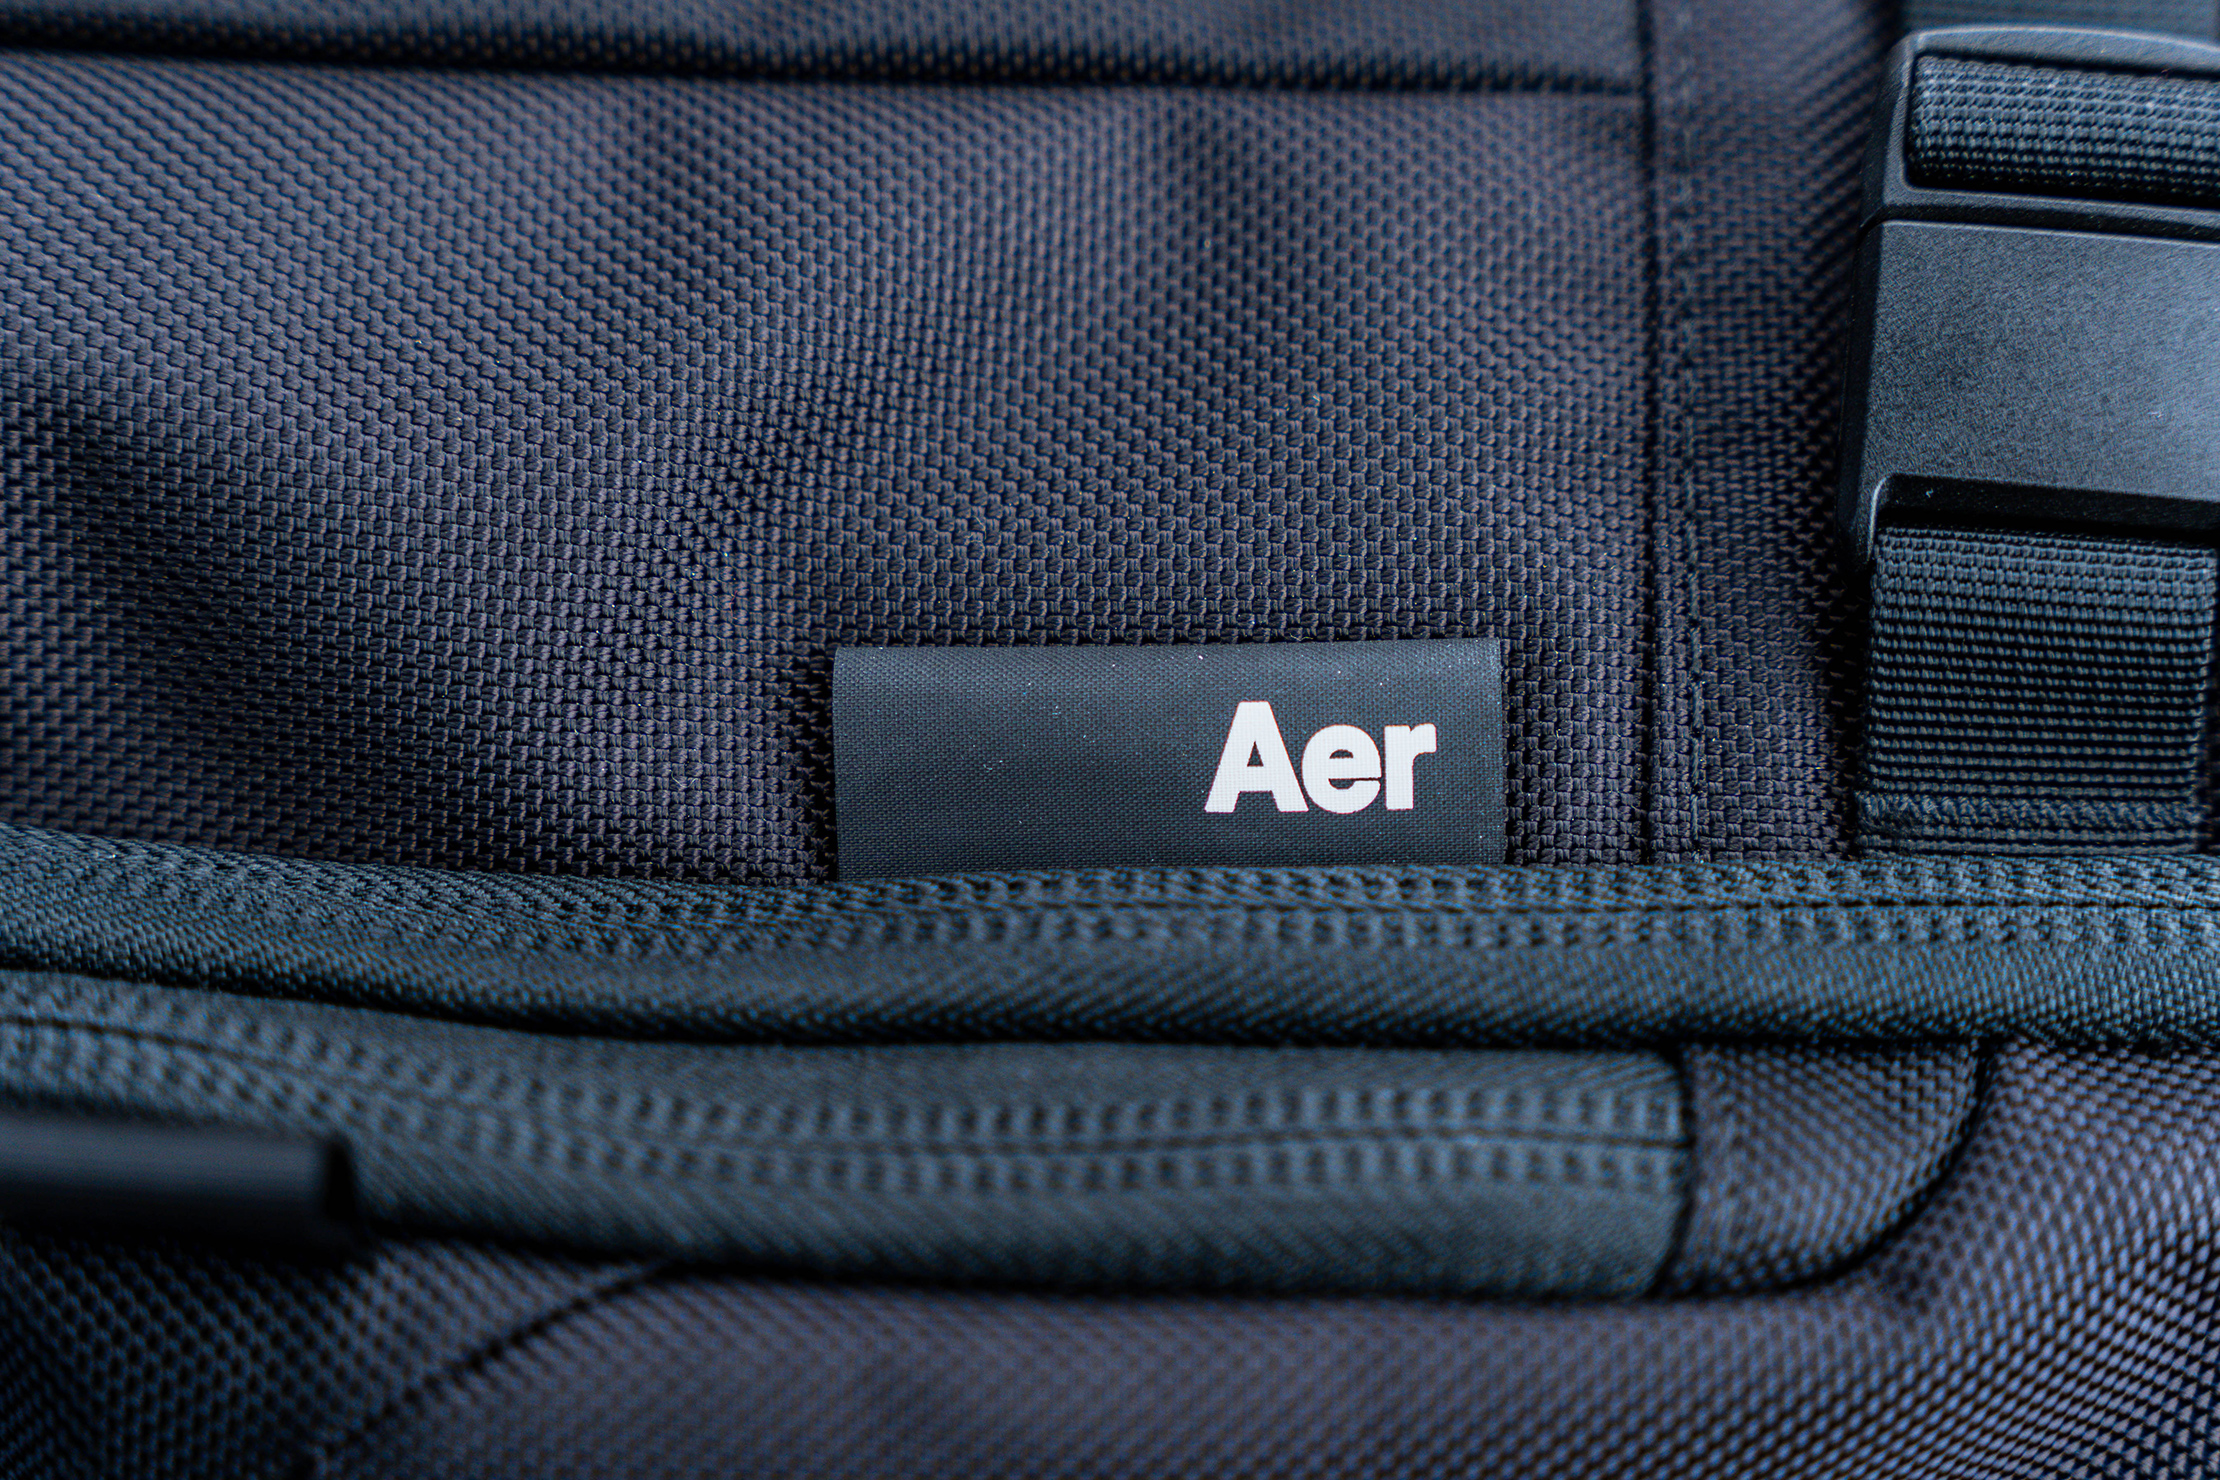 Aer Travel Pack 3 Brand